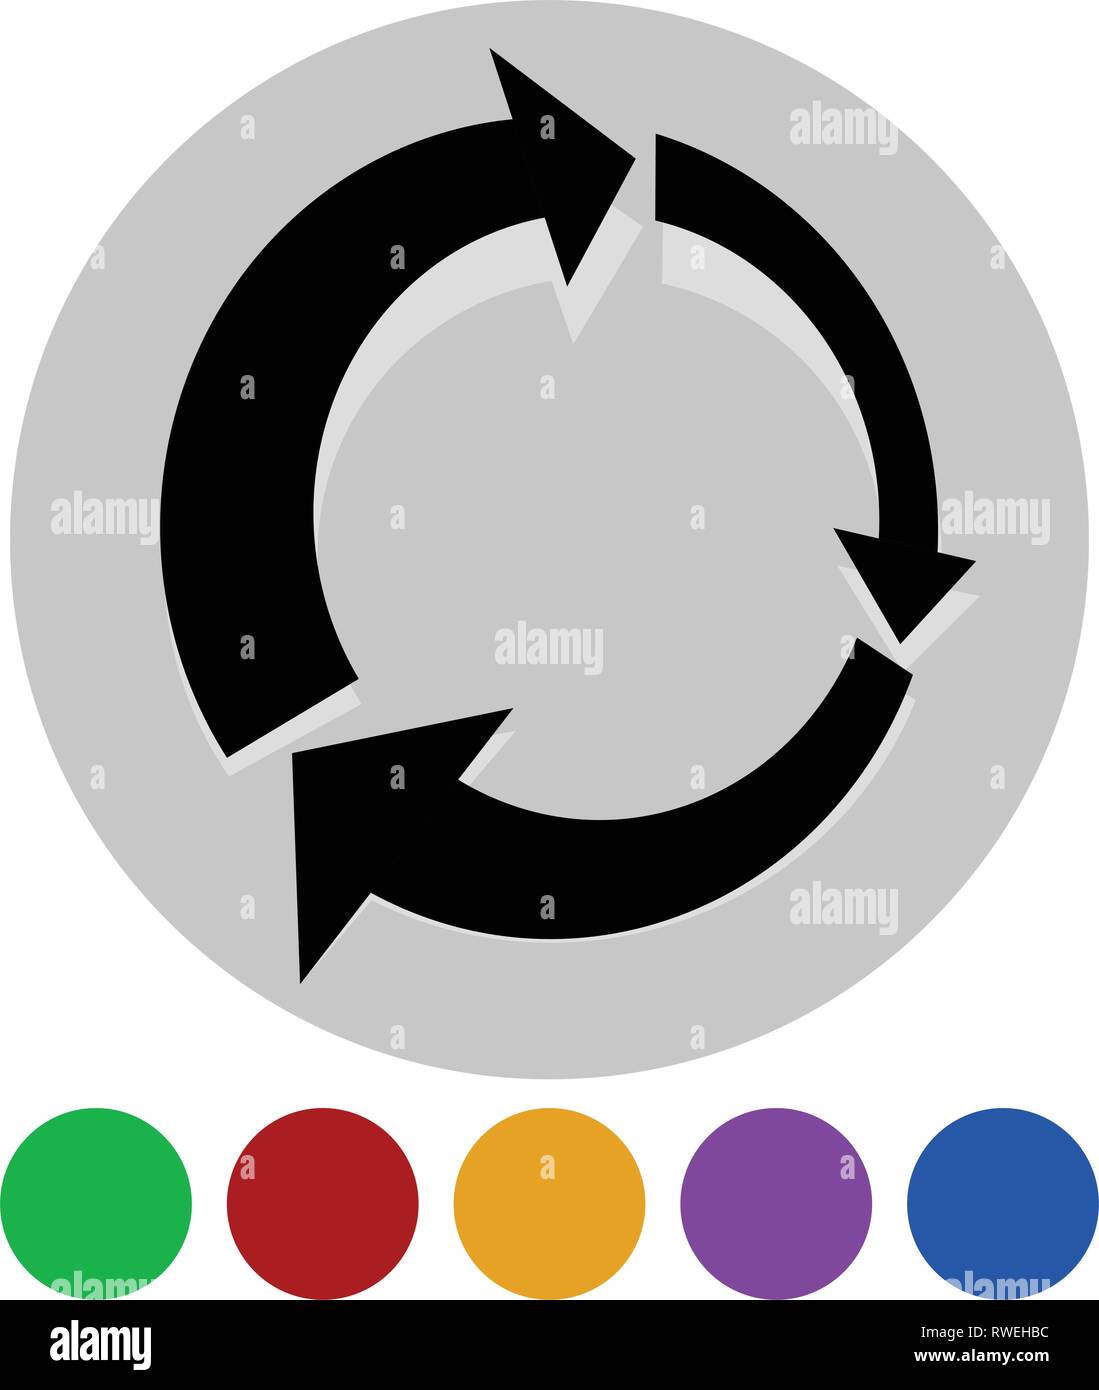 Icon with circular arrow - Revise, centrifuge, synchronize concepts Stock Vector